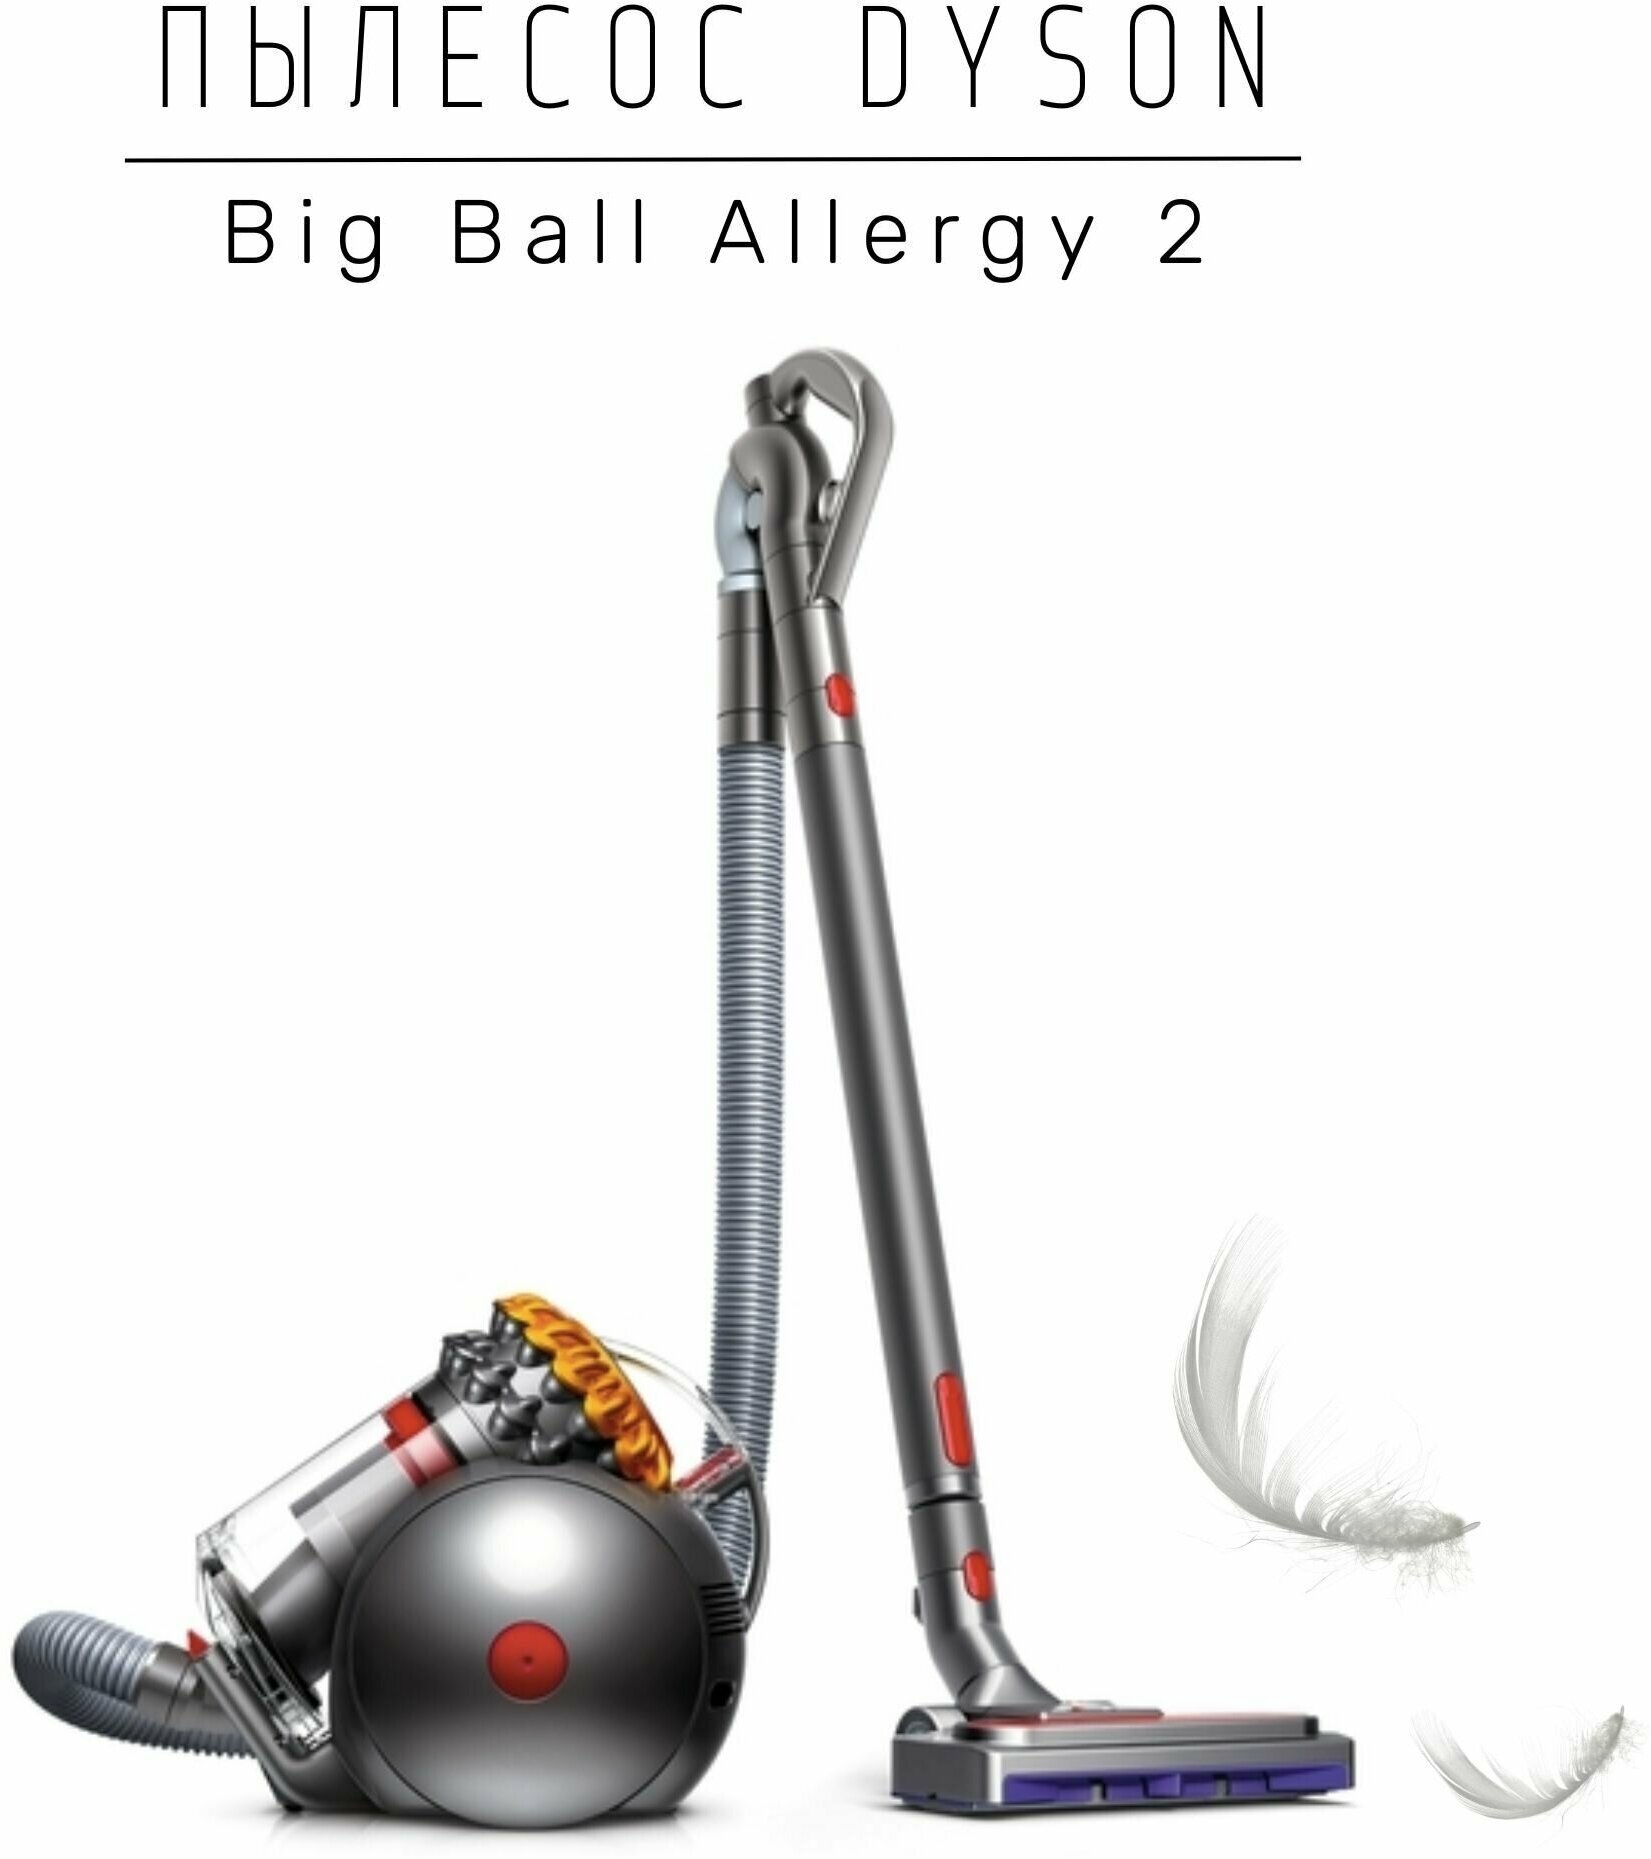 Пылесос Dyson Big ball allergy 2 (CY28) EU, iron/silver/yellow, вилка для РФ - фотография № 14